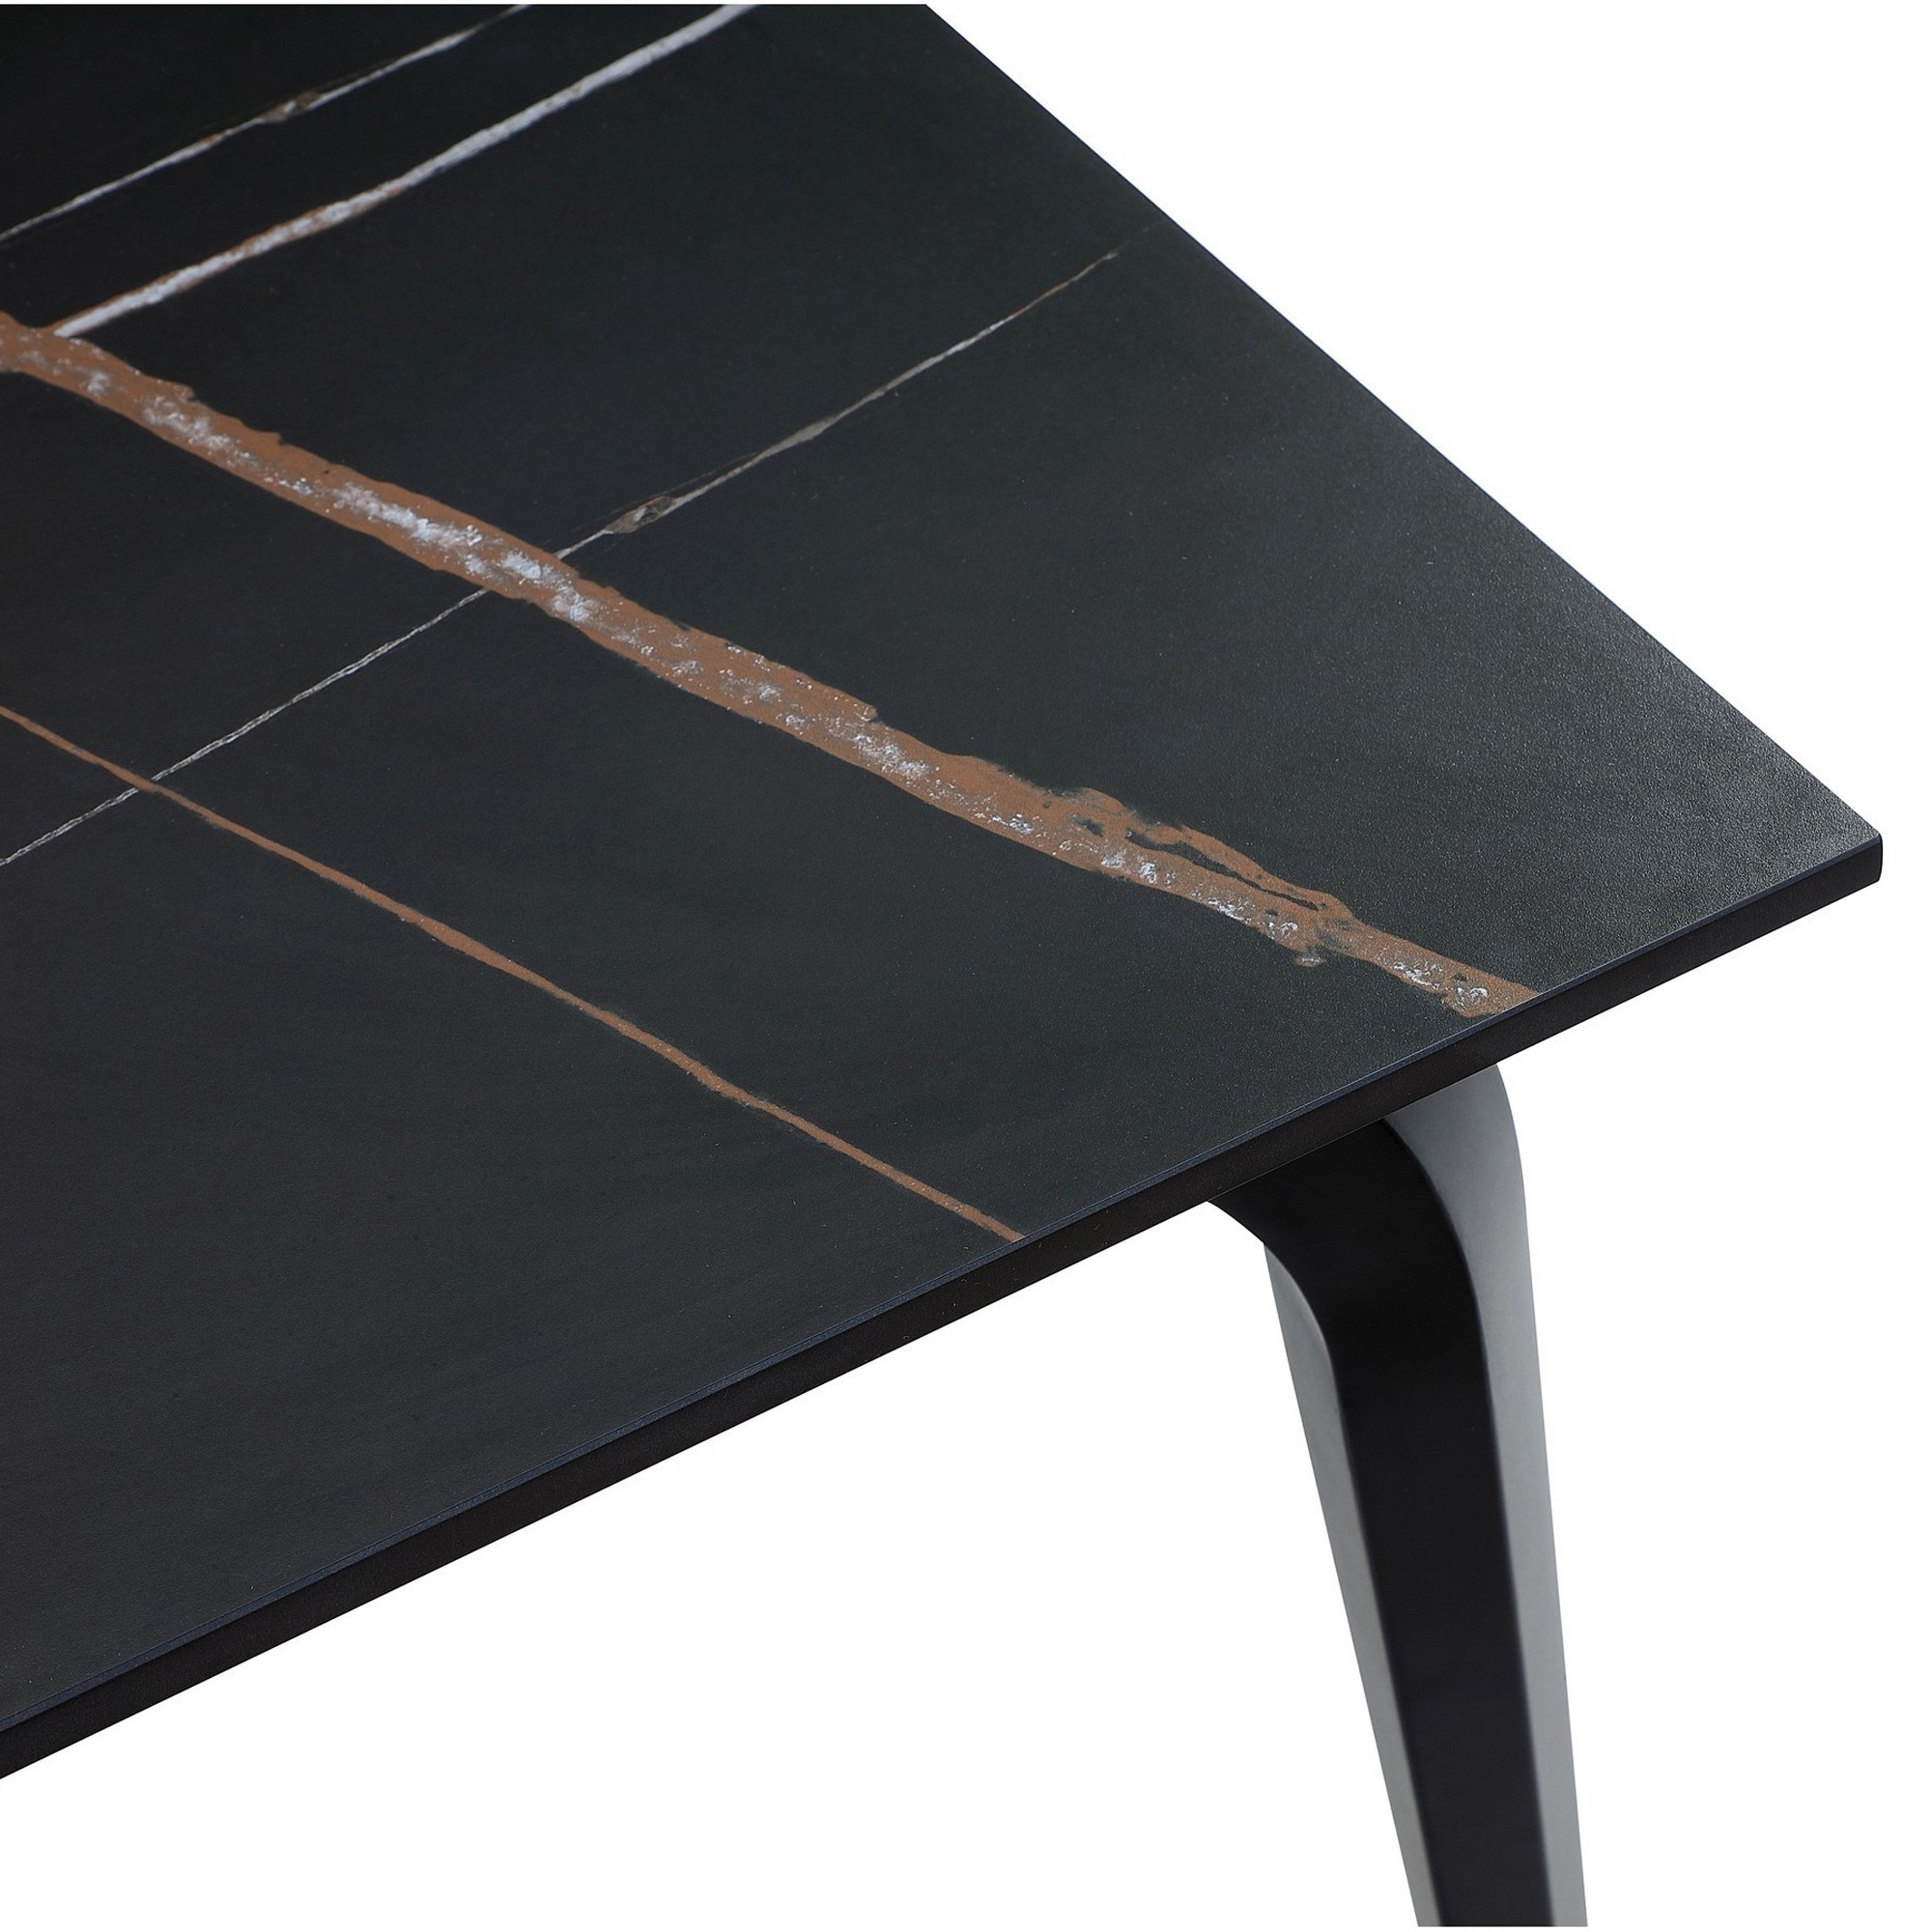 Gower 71 Inch Rectangular Dining Table, Black Stone Top, Black Metal Base- Saltoro Sherpi